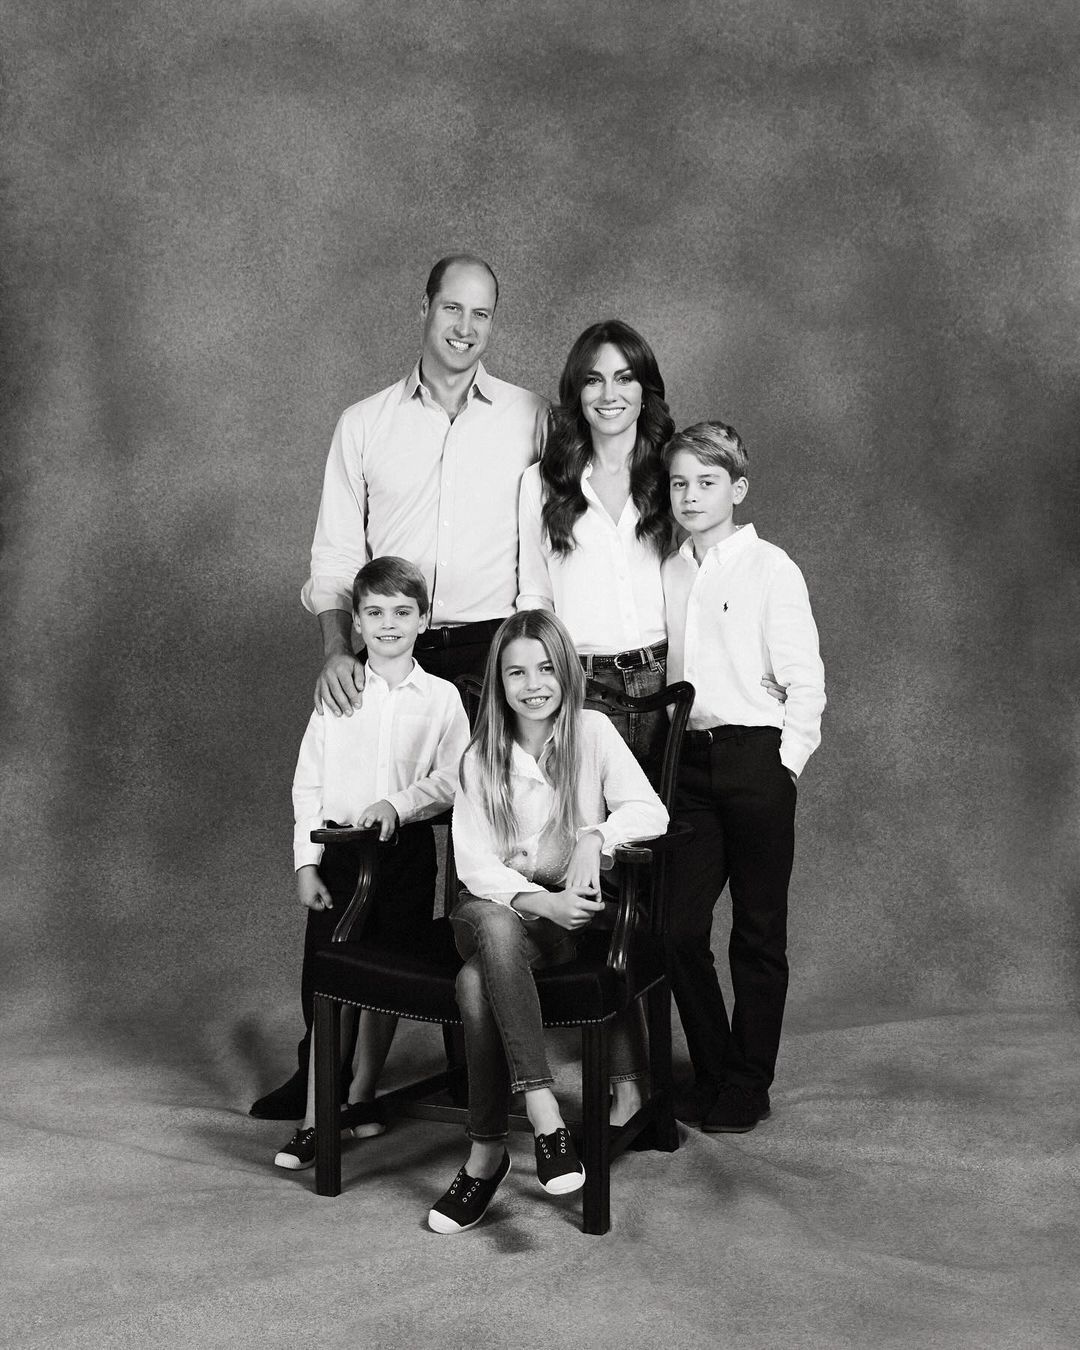 W dżinsach i białych koszulach: Kate Middleton i książę William oraz ich dzieci zaskoczyli nietypową kartką świąteczną. Zdjęcie